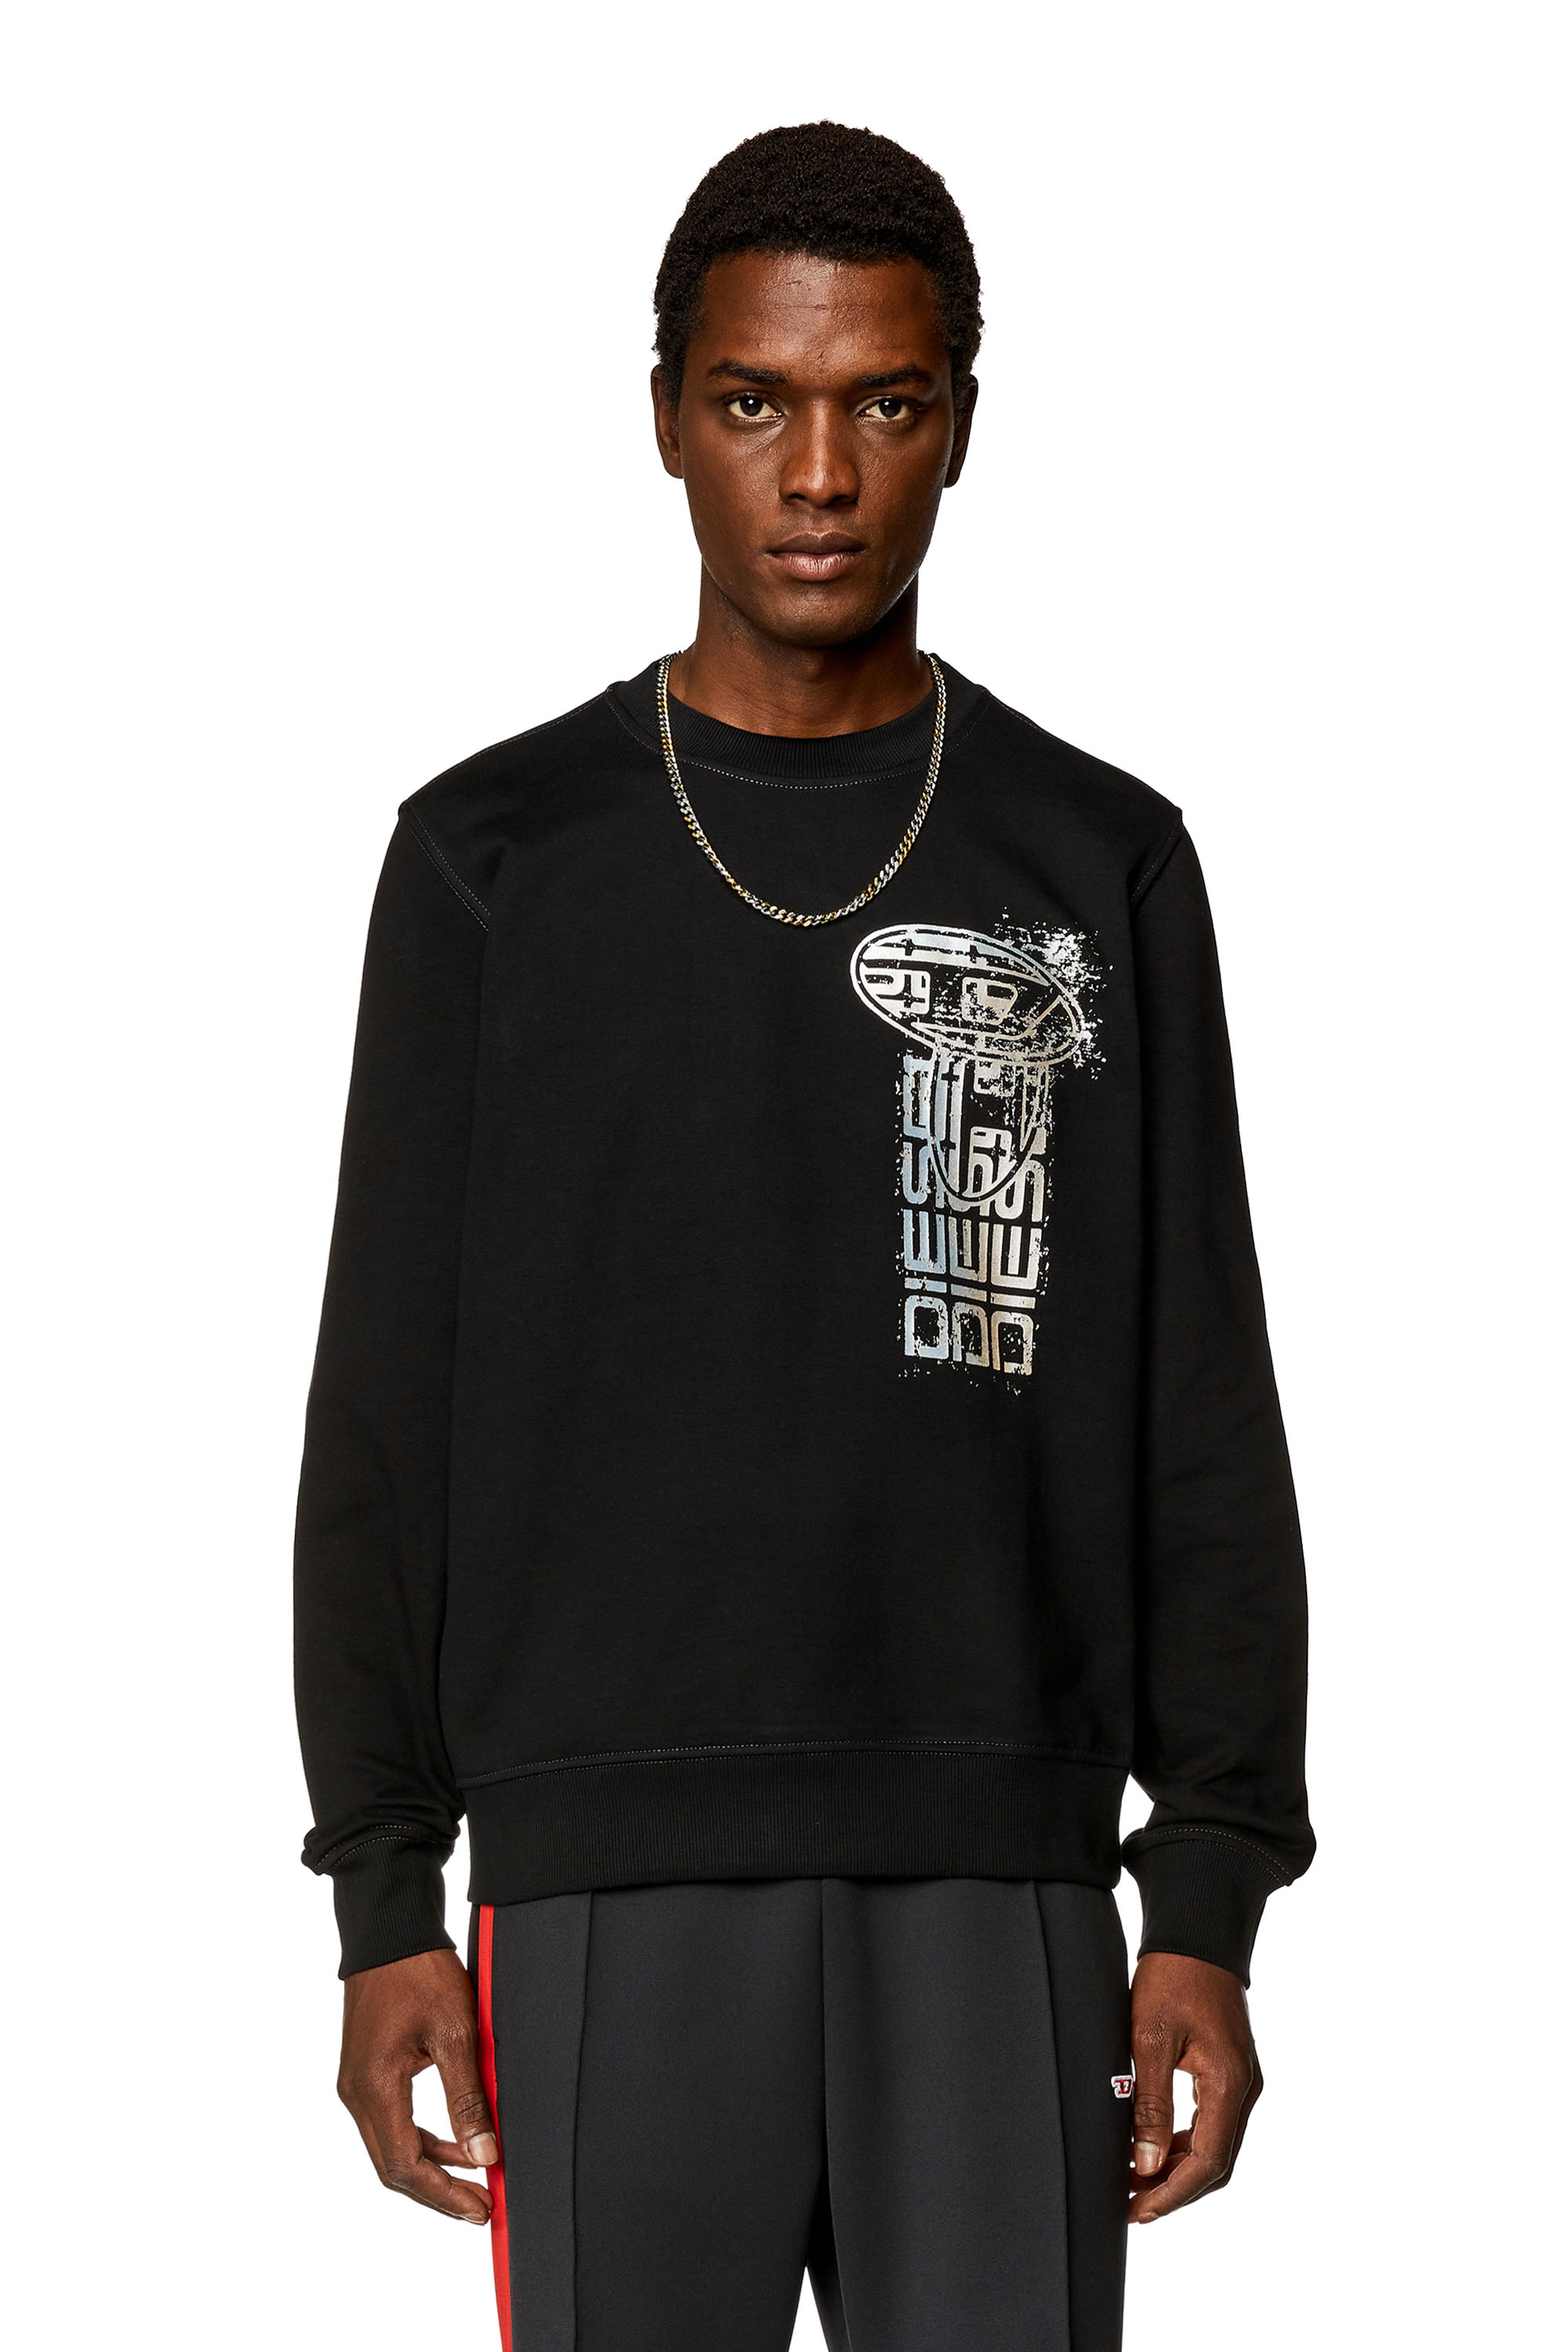 Diesel - Sweat-shirt avec logo métallisé - Pull Cotton - Homme - Noir